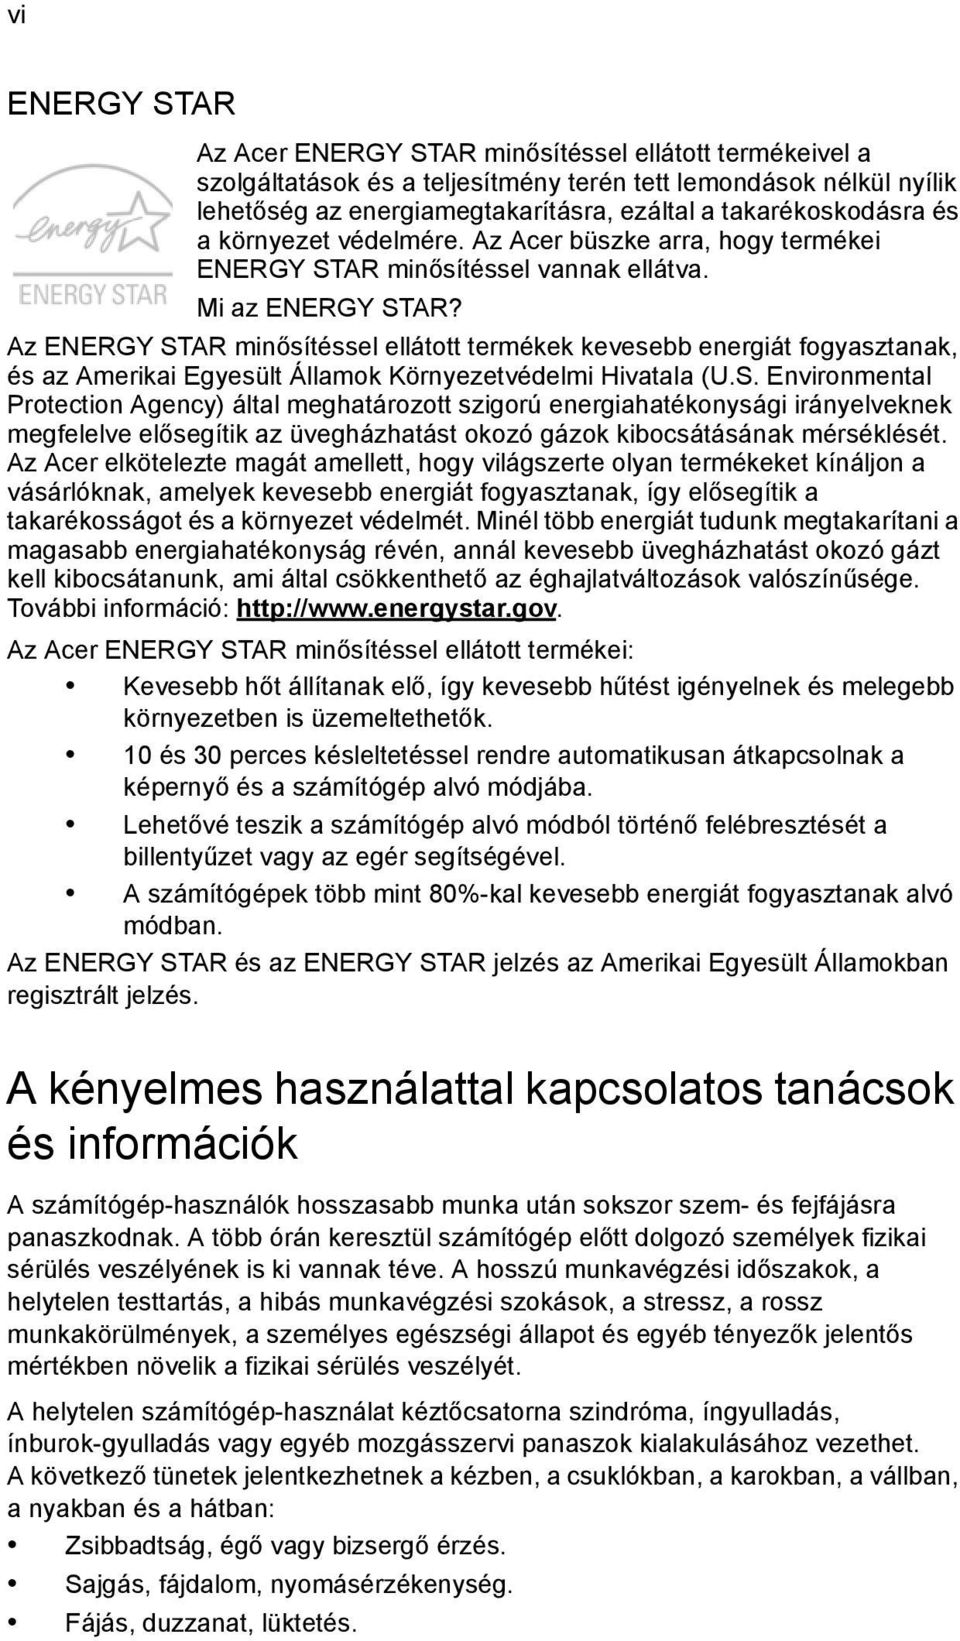 Az ENERGY STAR minősítéssel ellátott termékek kevesebb energiát fogyasztanak, és az Amerikai Egyesült Államok Környezetvédelmi Hivatala (U.S. Environmental Protection Agency) által meghatározott szigorú energiahatékonysági irányelveknek megfelelve elősegítik az üvegházhatást okozó gázok kibocsátásának mérséklését.